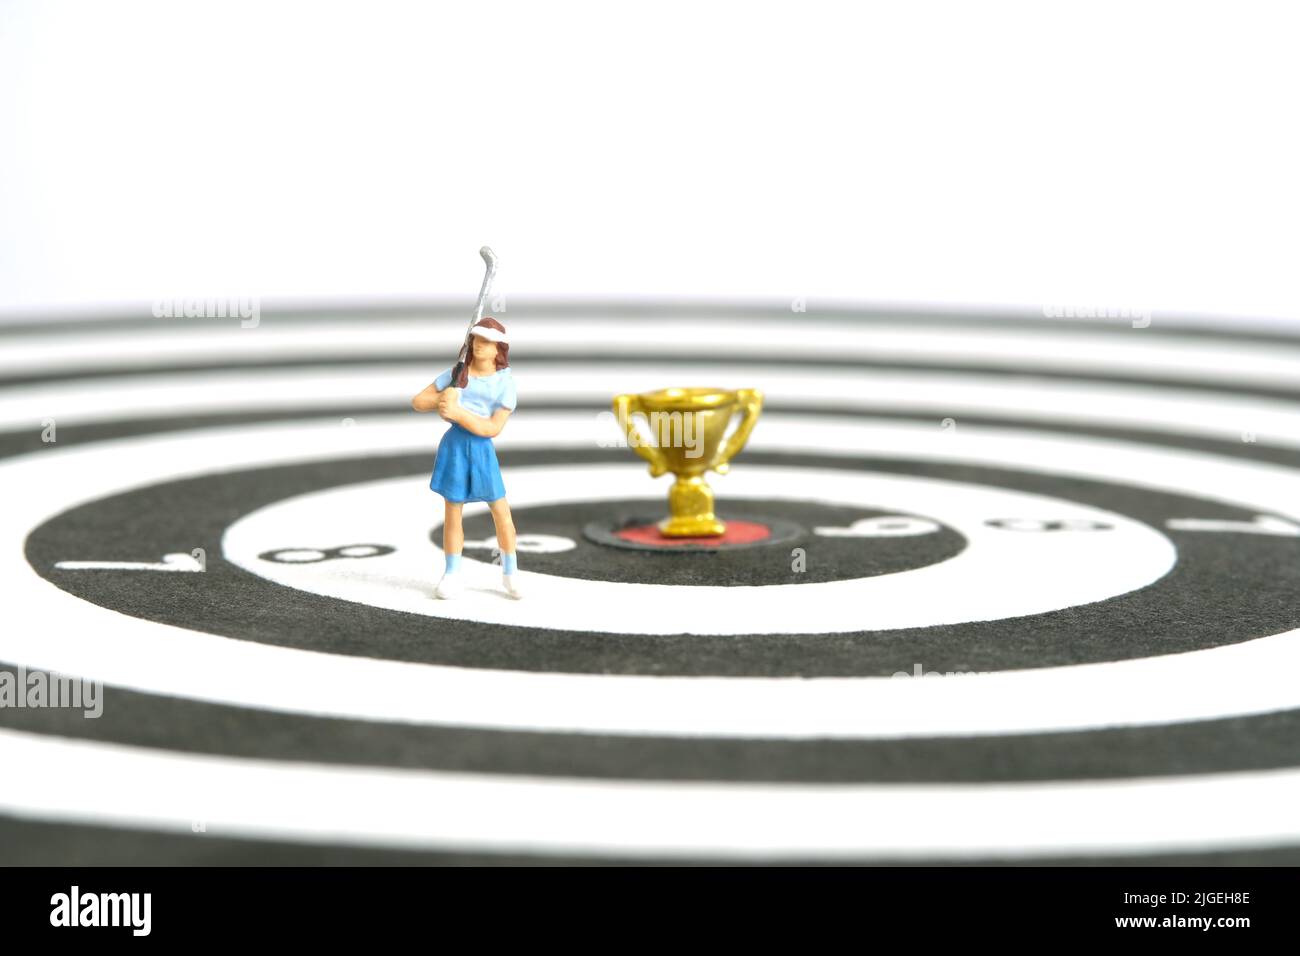 Miniatur Menschen Spielzeug Figur Fotografie. Ein Golfermädchen, das über der Dartscheibe mit Goldtrophäe in der Mitte steht, isoliert auf weißem Hintergrund. Bild-ph Stockfoto